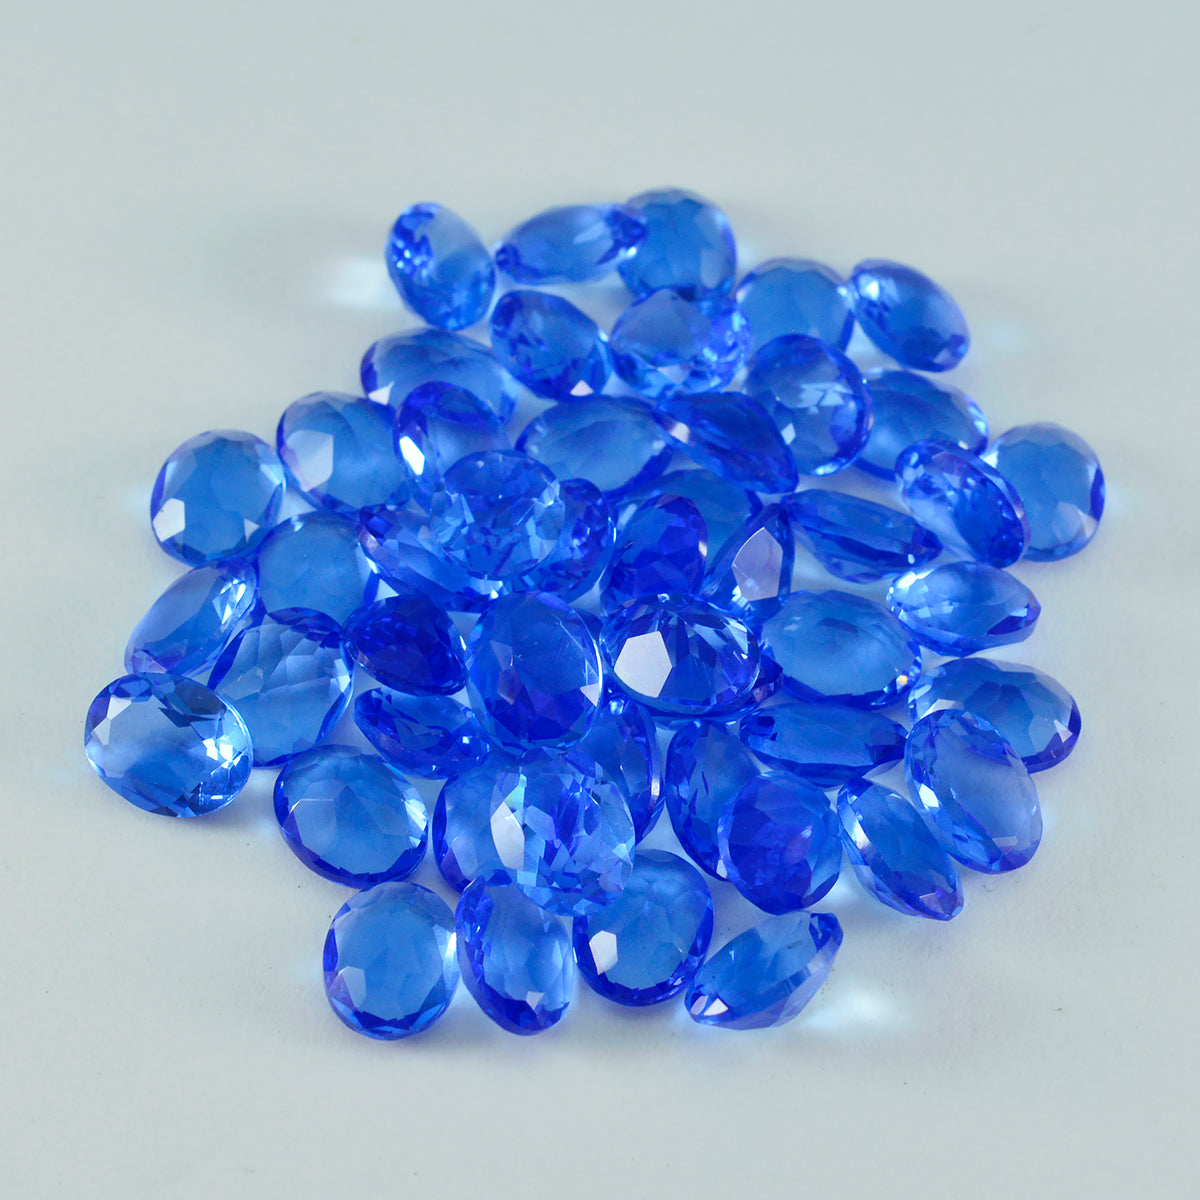 riyogems 1шт синий сапфир cz ограненный 3x5 мм овальной формы качество россыпи драгоценные камни